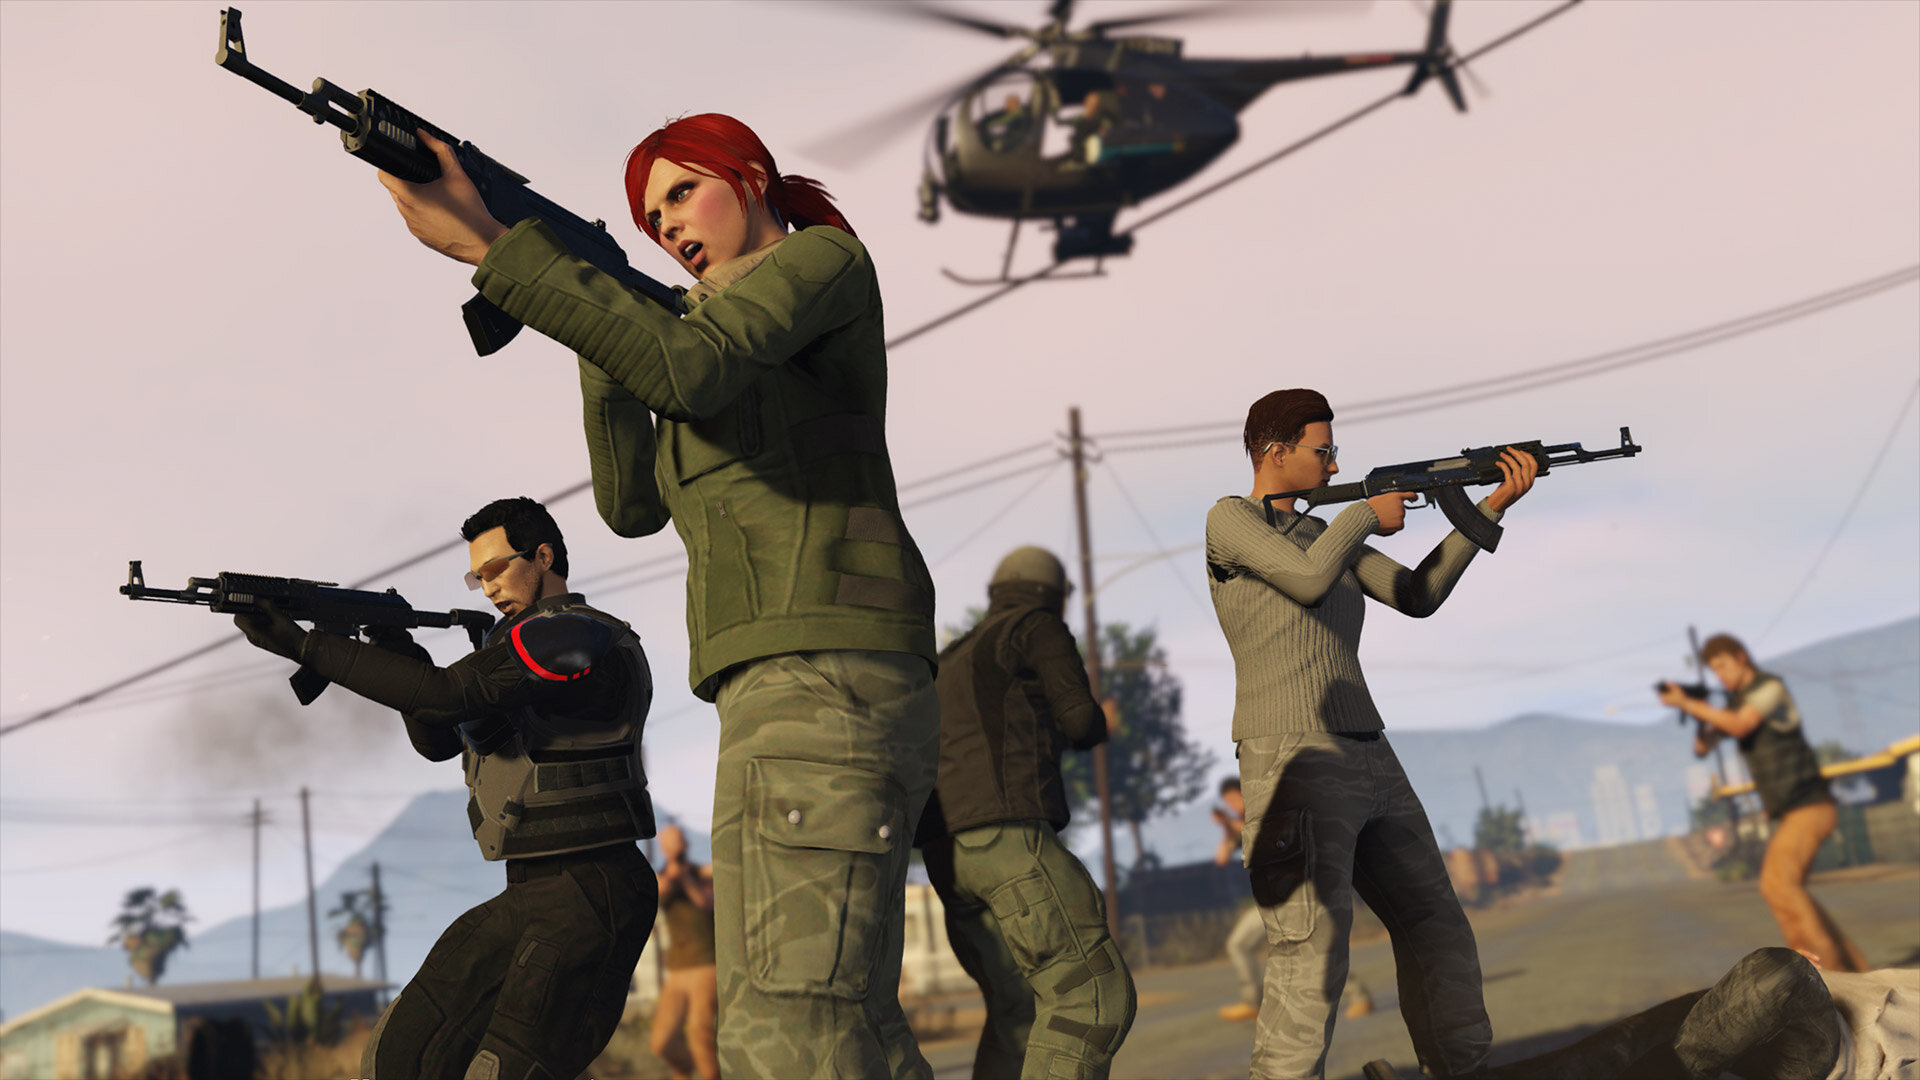 More information about "Zeven nieuwe Survival Maps arriveren op GTA Online"